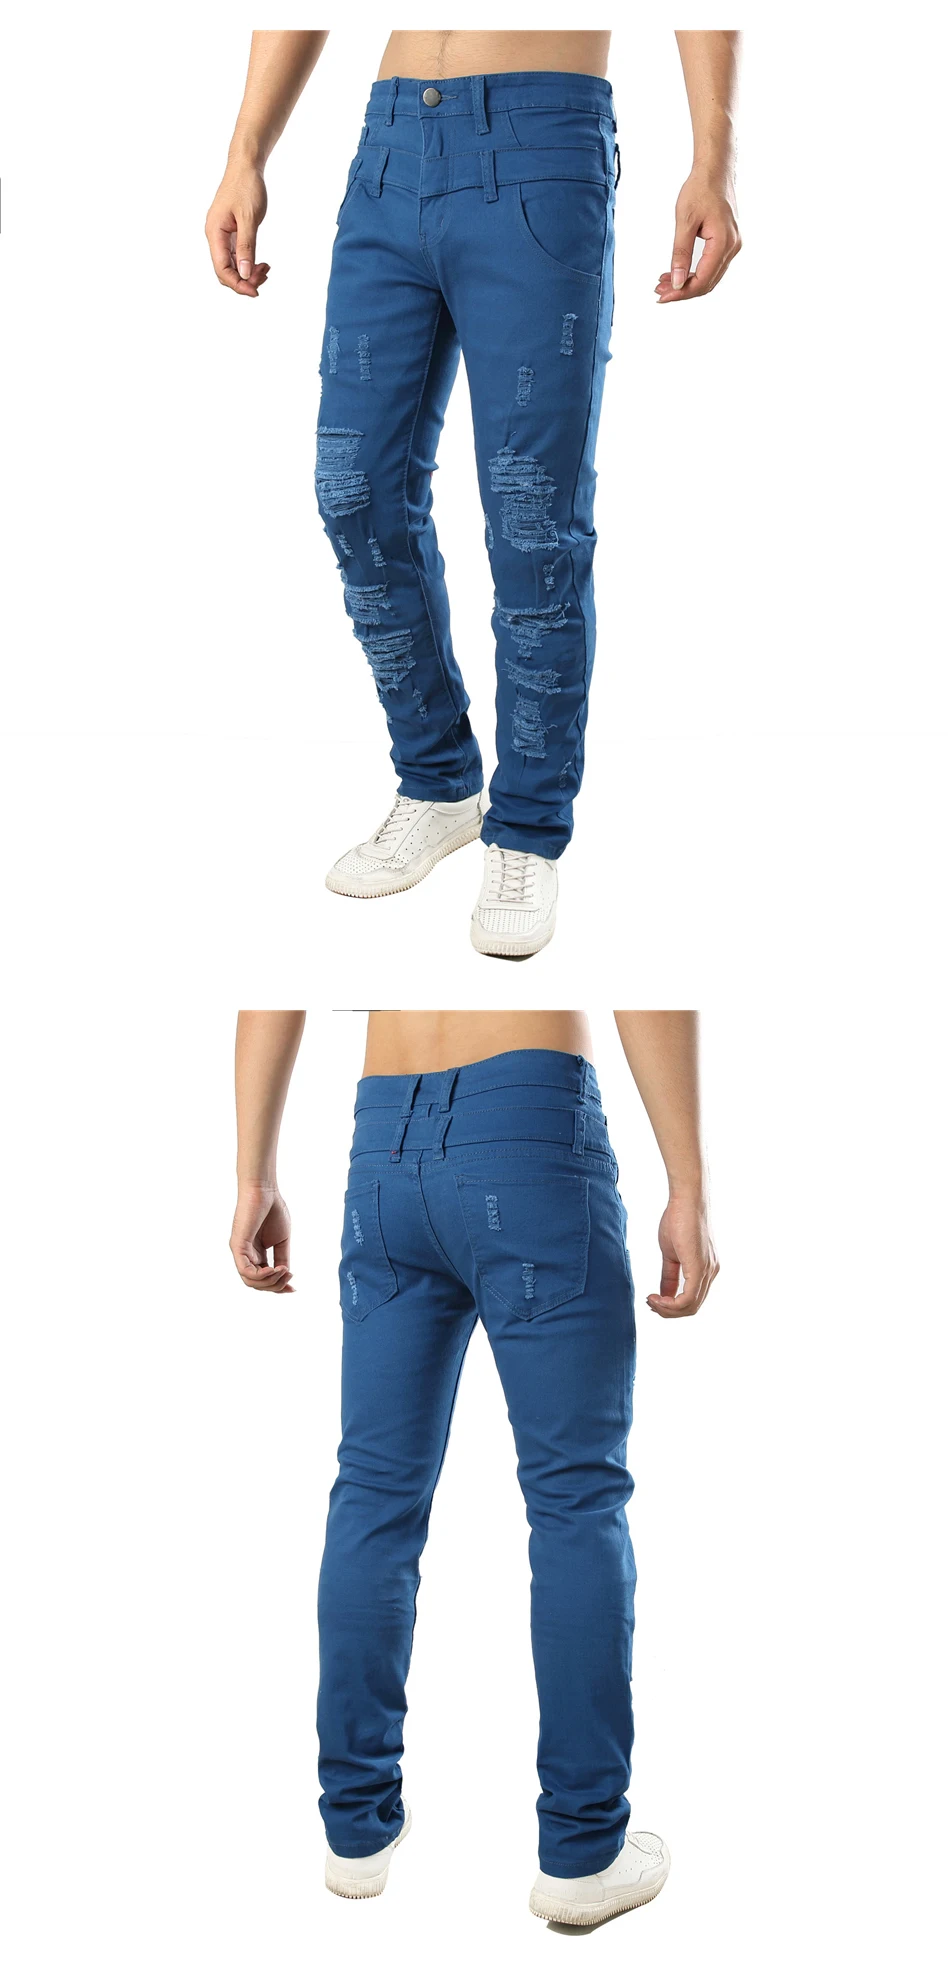 QAUNBO для мужчин's стрейчевый облегающий джинсы для женщин модные Плиссированные Лоскутная рваные байкерские джинсы мотоцикл эластичные